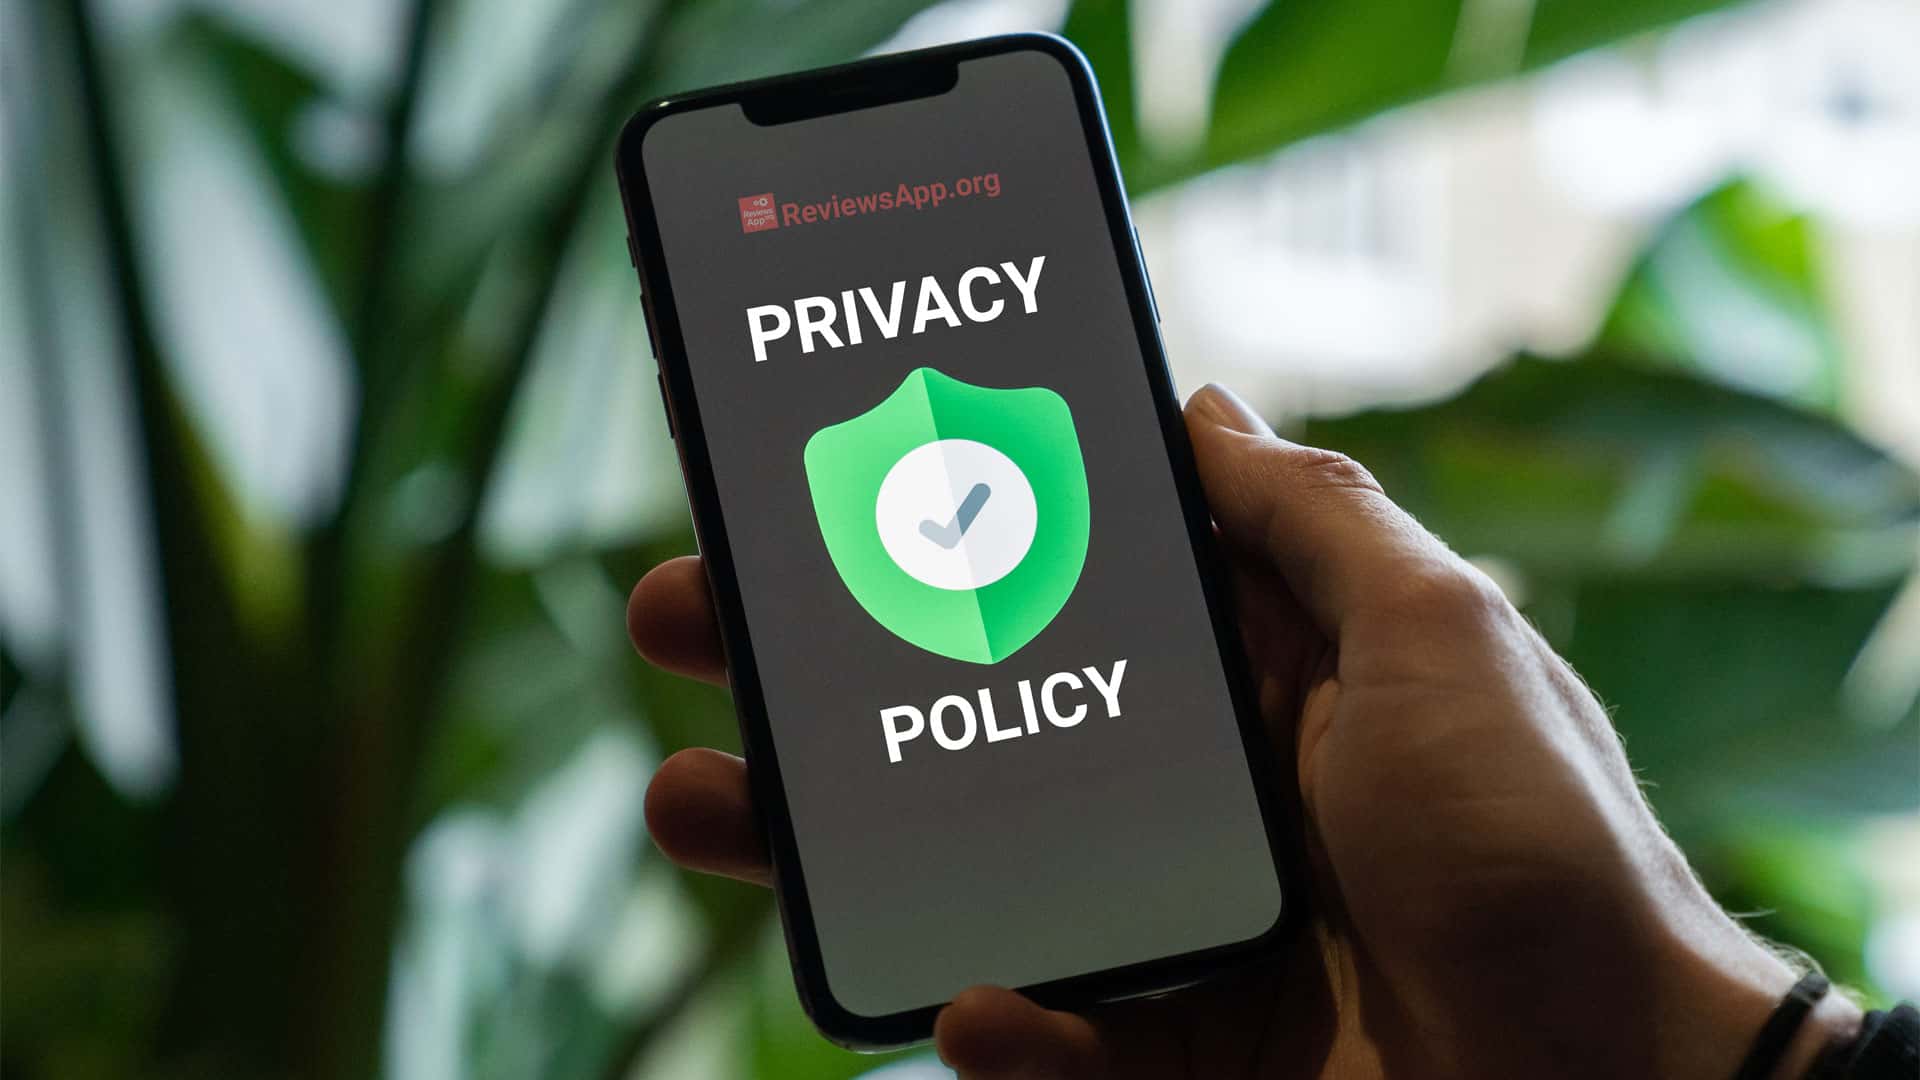 Reviews App - Privacy Policy